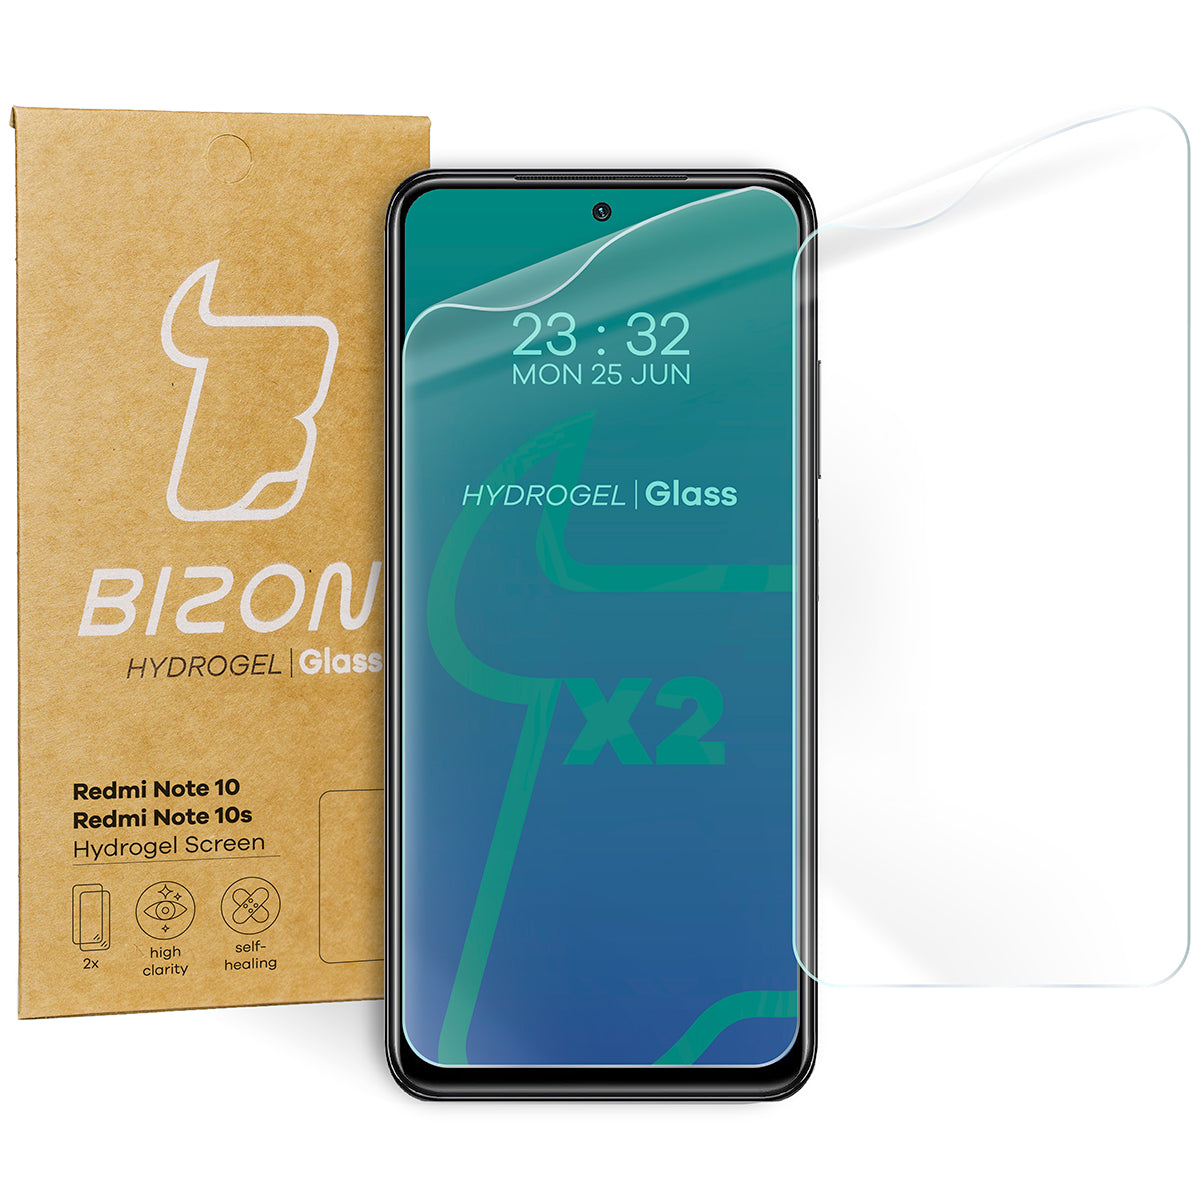 Hydrogel Folie für den Bildschirm Bizon Glass Hydrogel, Xiaomi Redmi Note 10 / 10s, 2 Stück